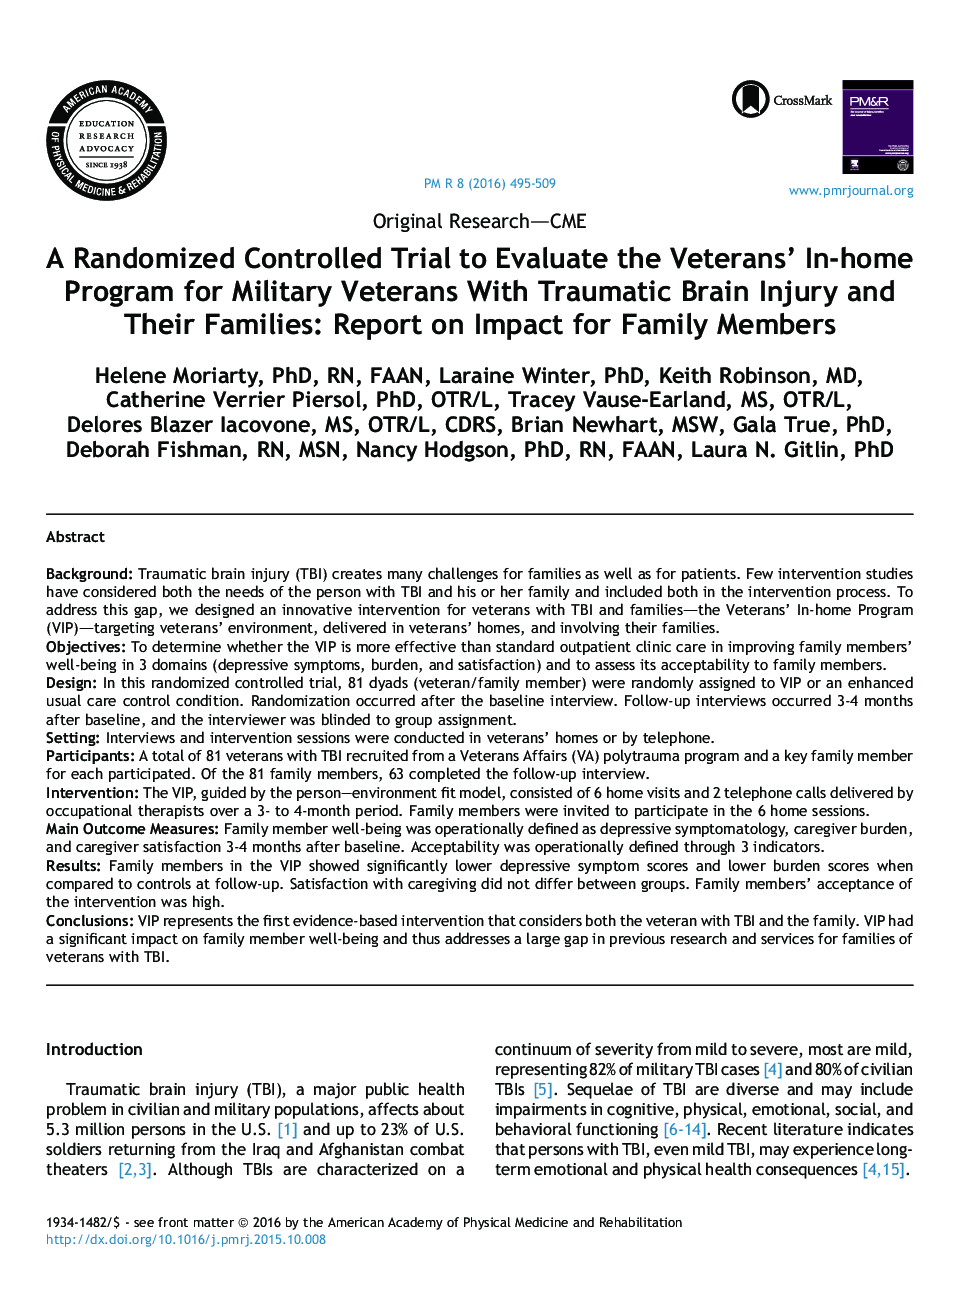 یک آزمایش محرمانه کنترل شده برای ارزیابی برنامه جانبازان جانباز برای جانبازان نظامی با آسیب مغزی آسیب دیده و خانواده های آنها: گزارش تاثیرات اعضای خانواده 